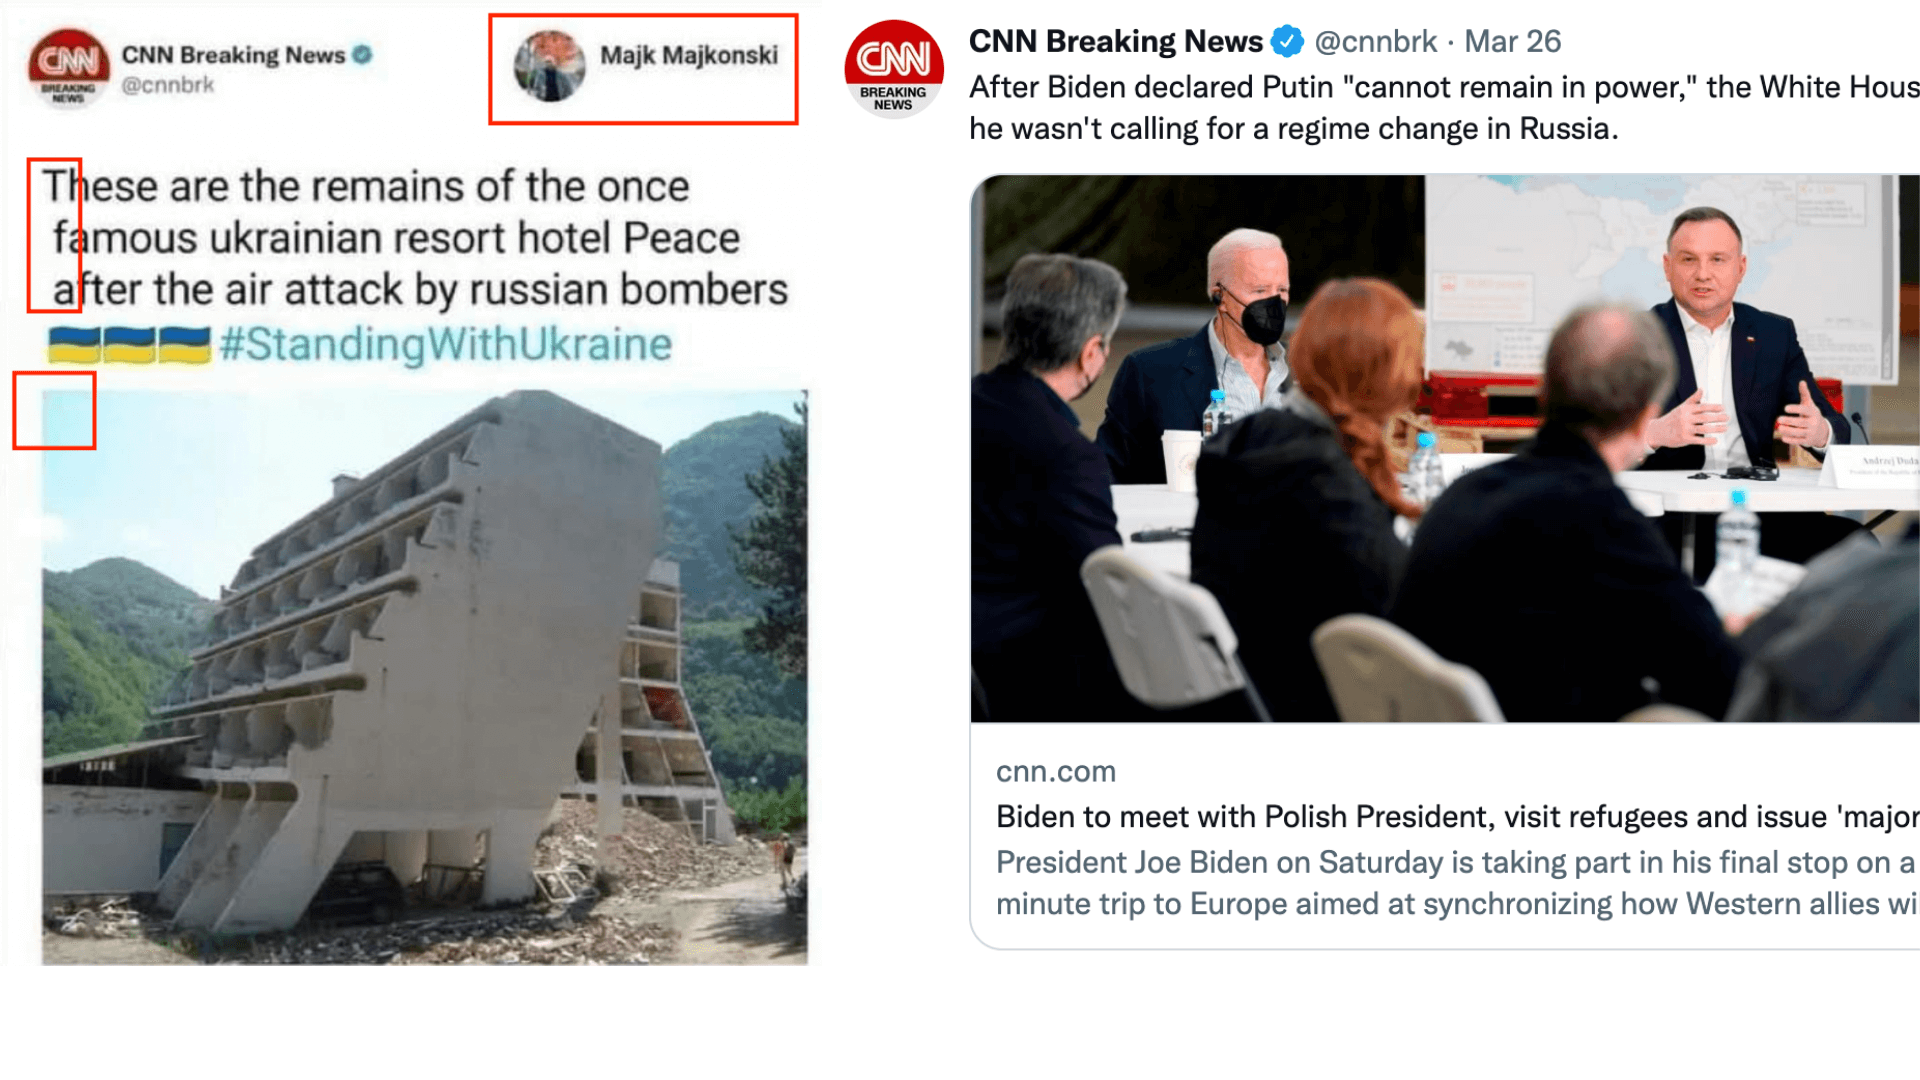 Links: der gefälschte Tweet, der auf Facebook verbreitet wird, rechts: Ein echter Tweet des Twitter-Accounts von CNN Breaking News